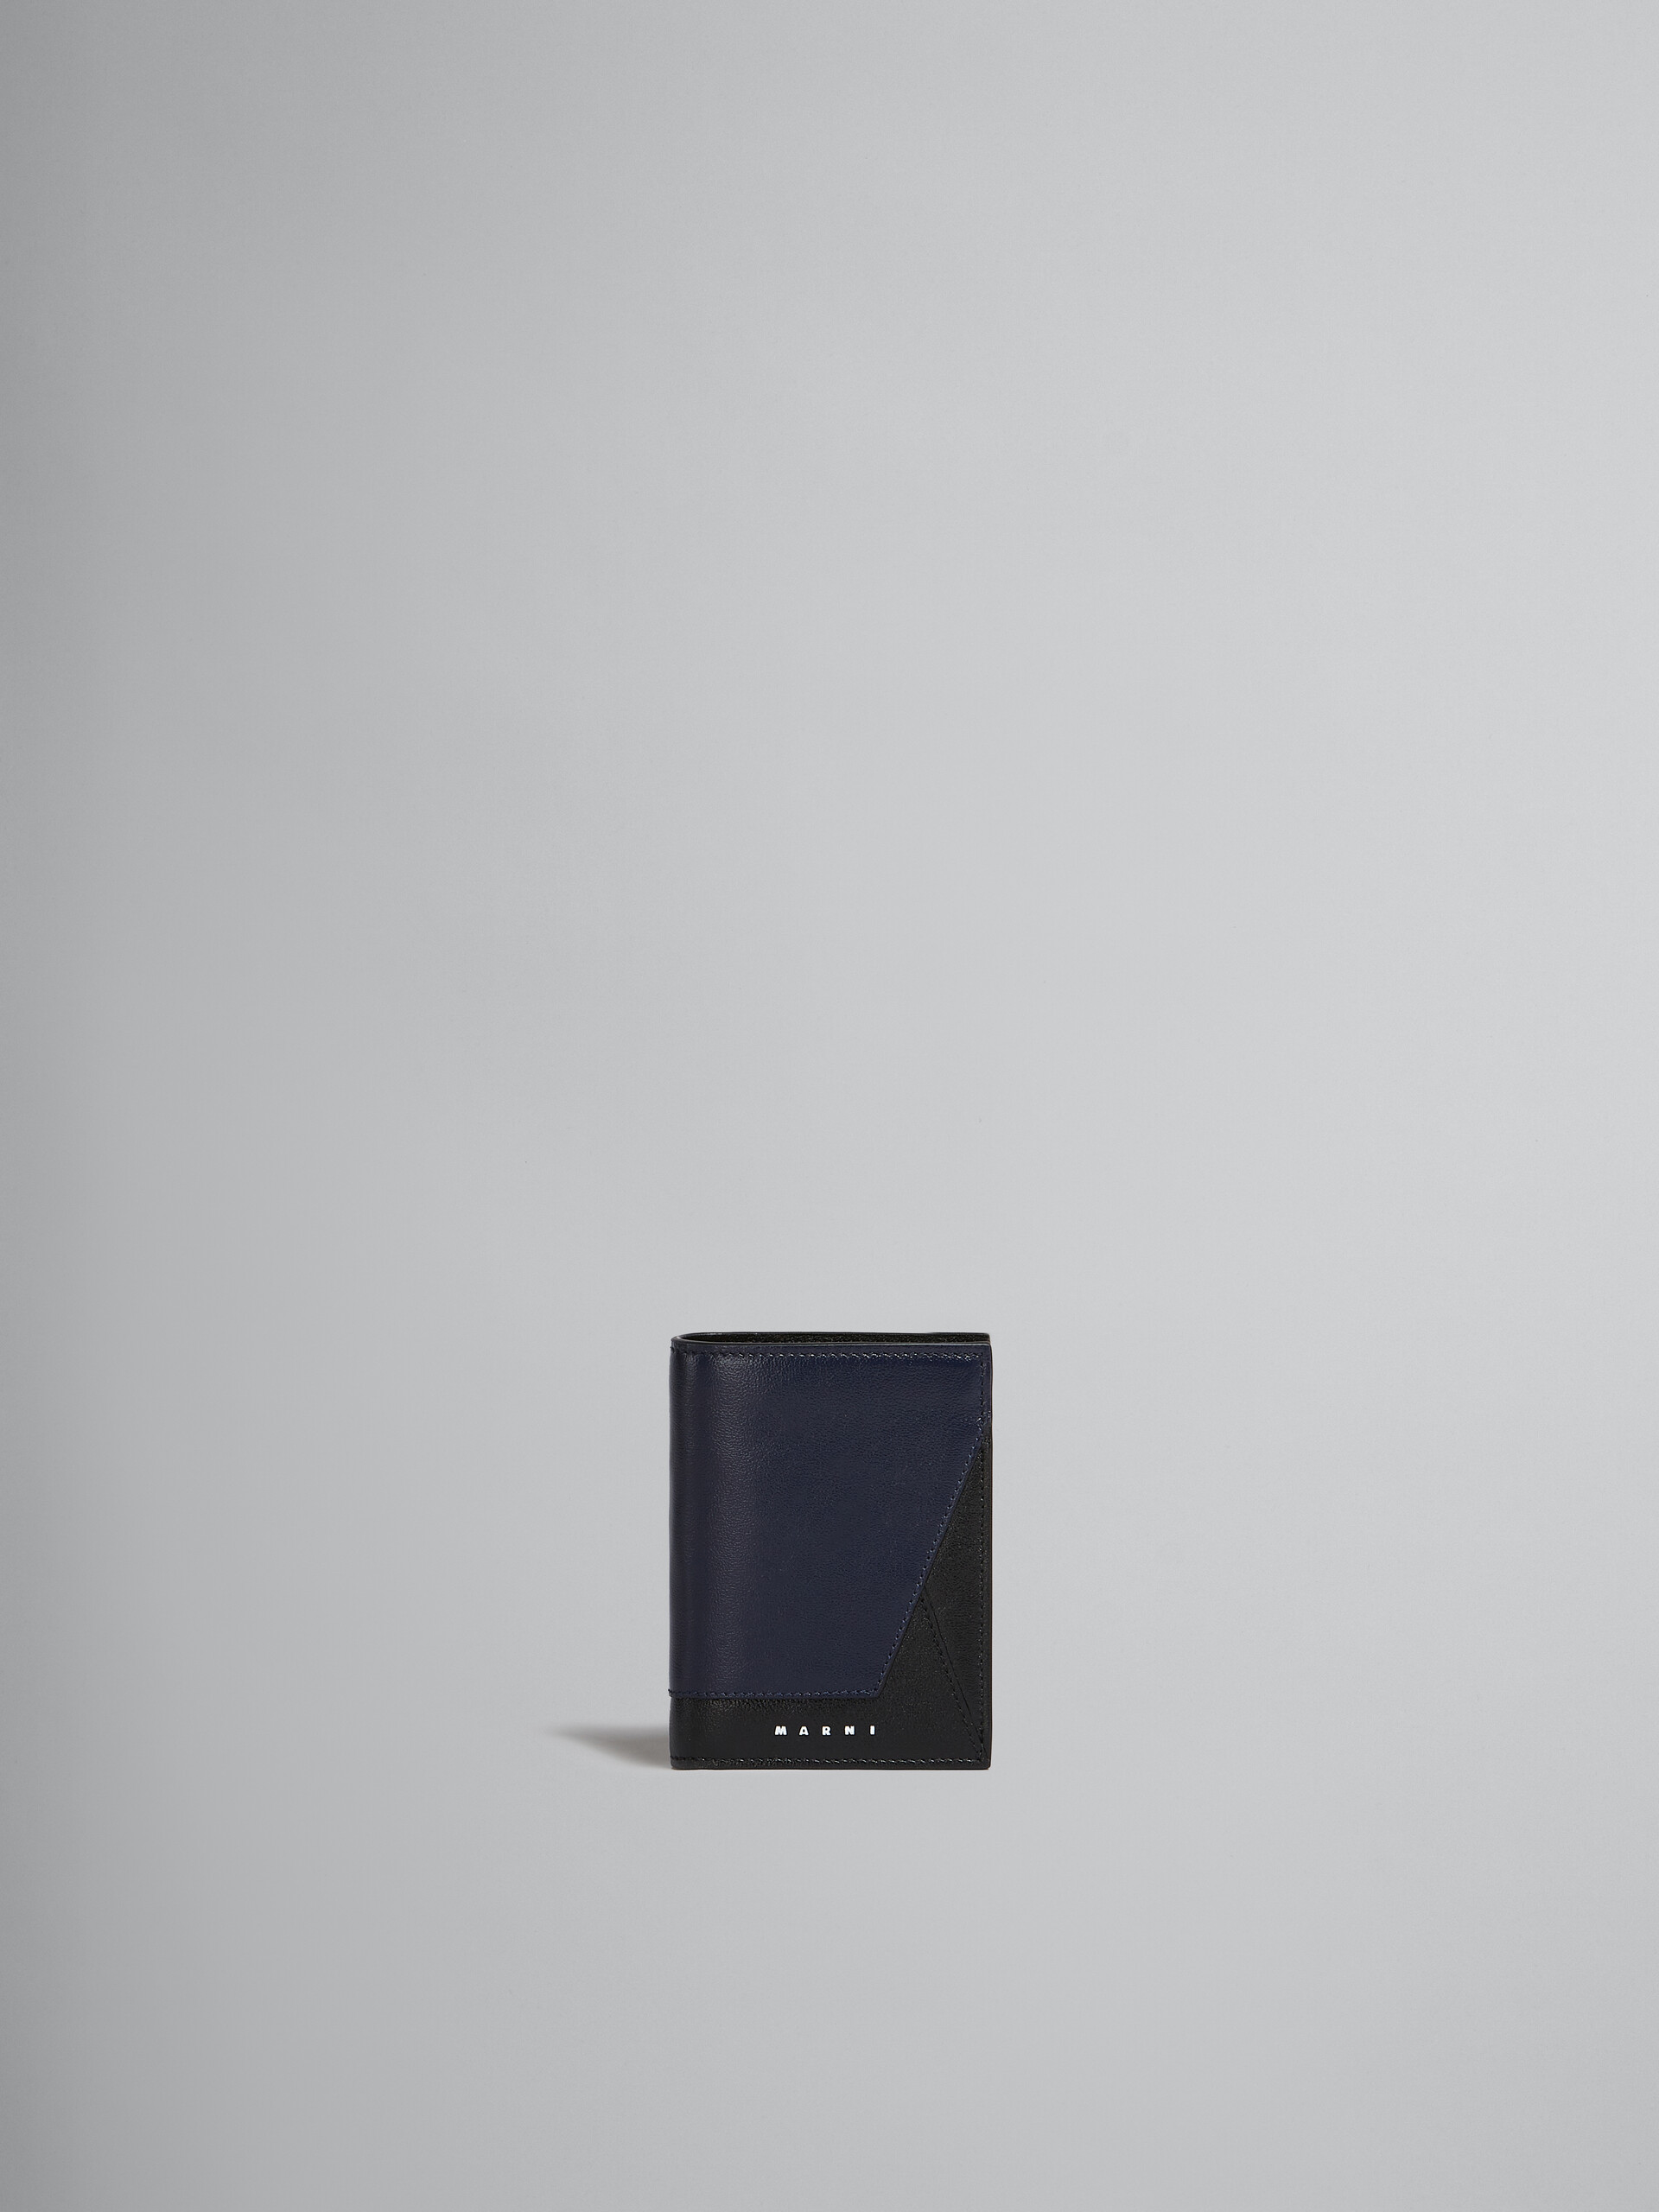 Portafoglio bi-fold in pelle blu e nera - Portafogli - Image 1